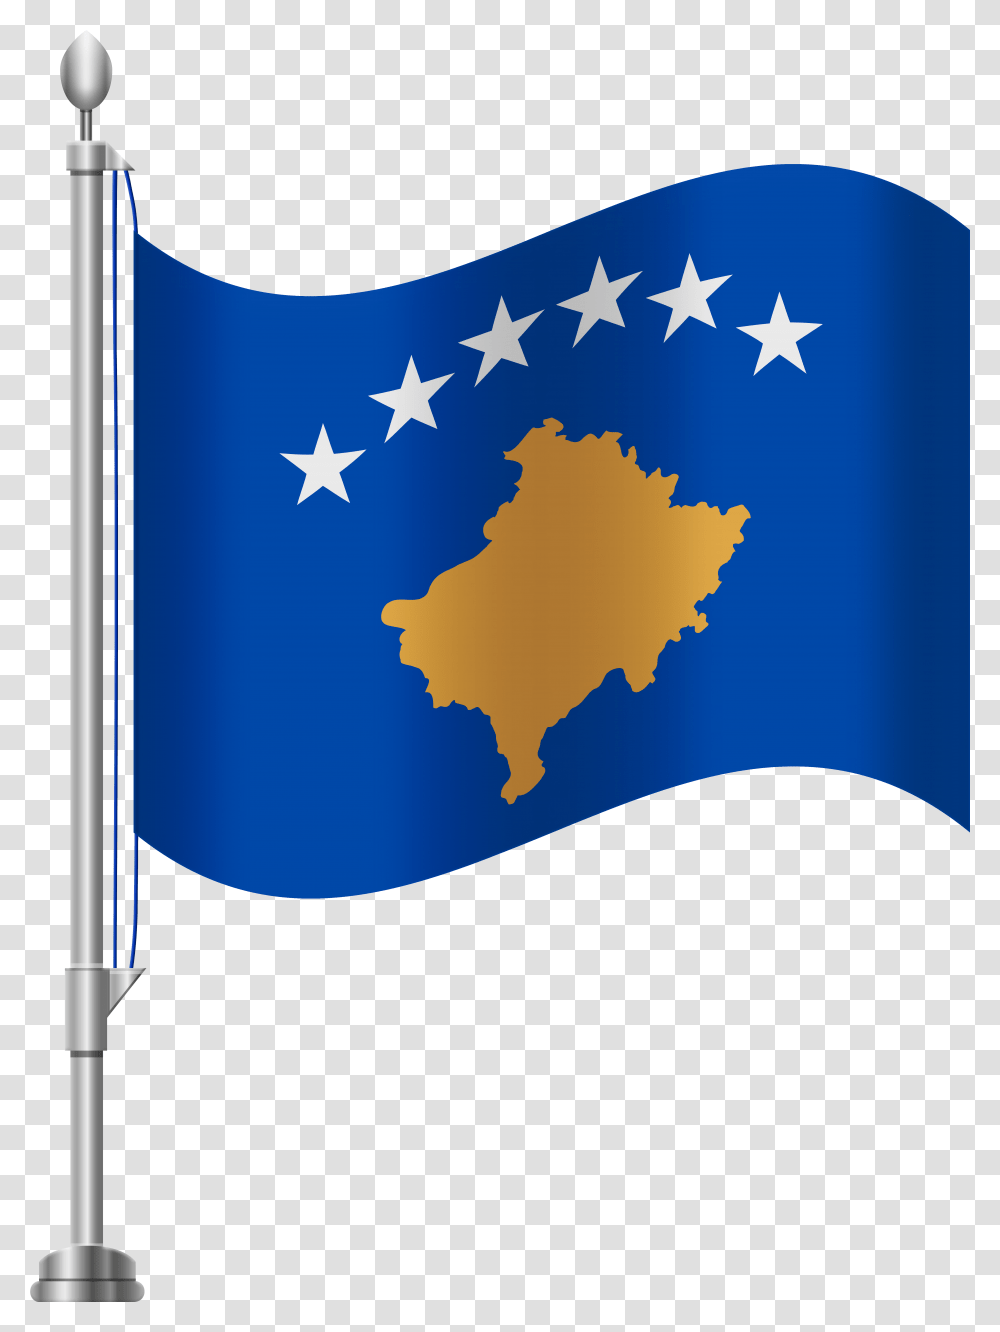 Kosovo Flag Liechtenstein Flag Background, American Flag Transparent Png